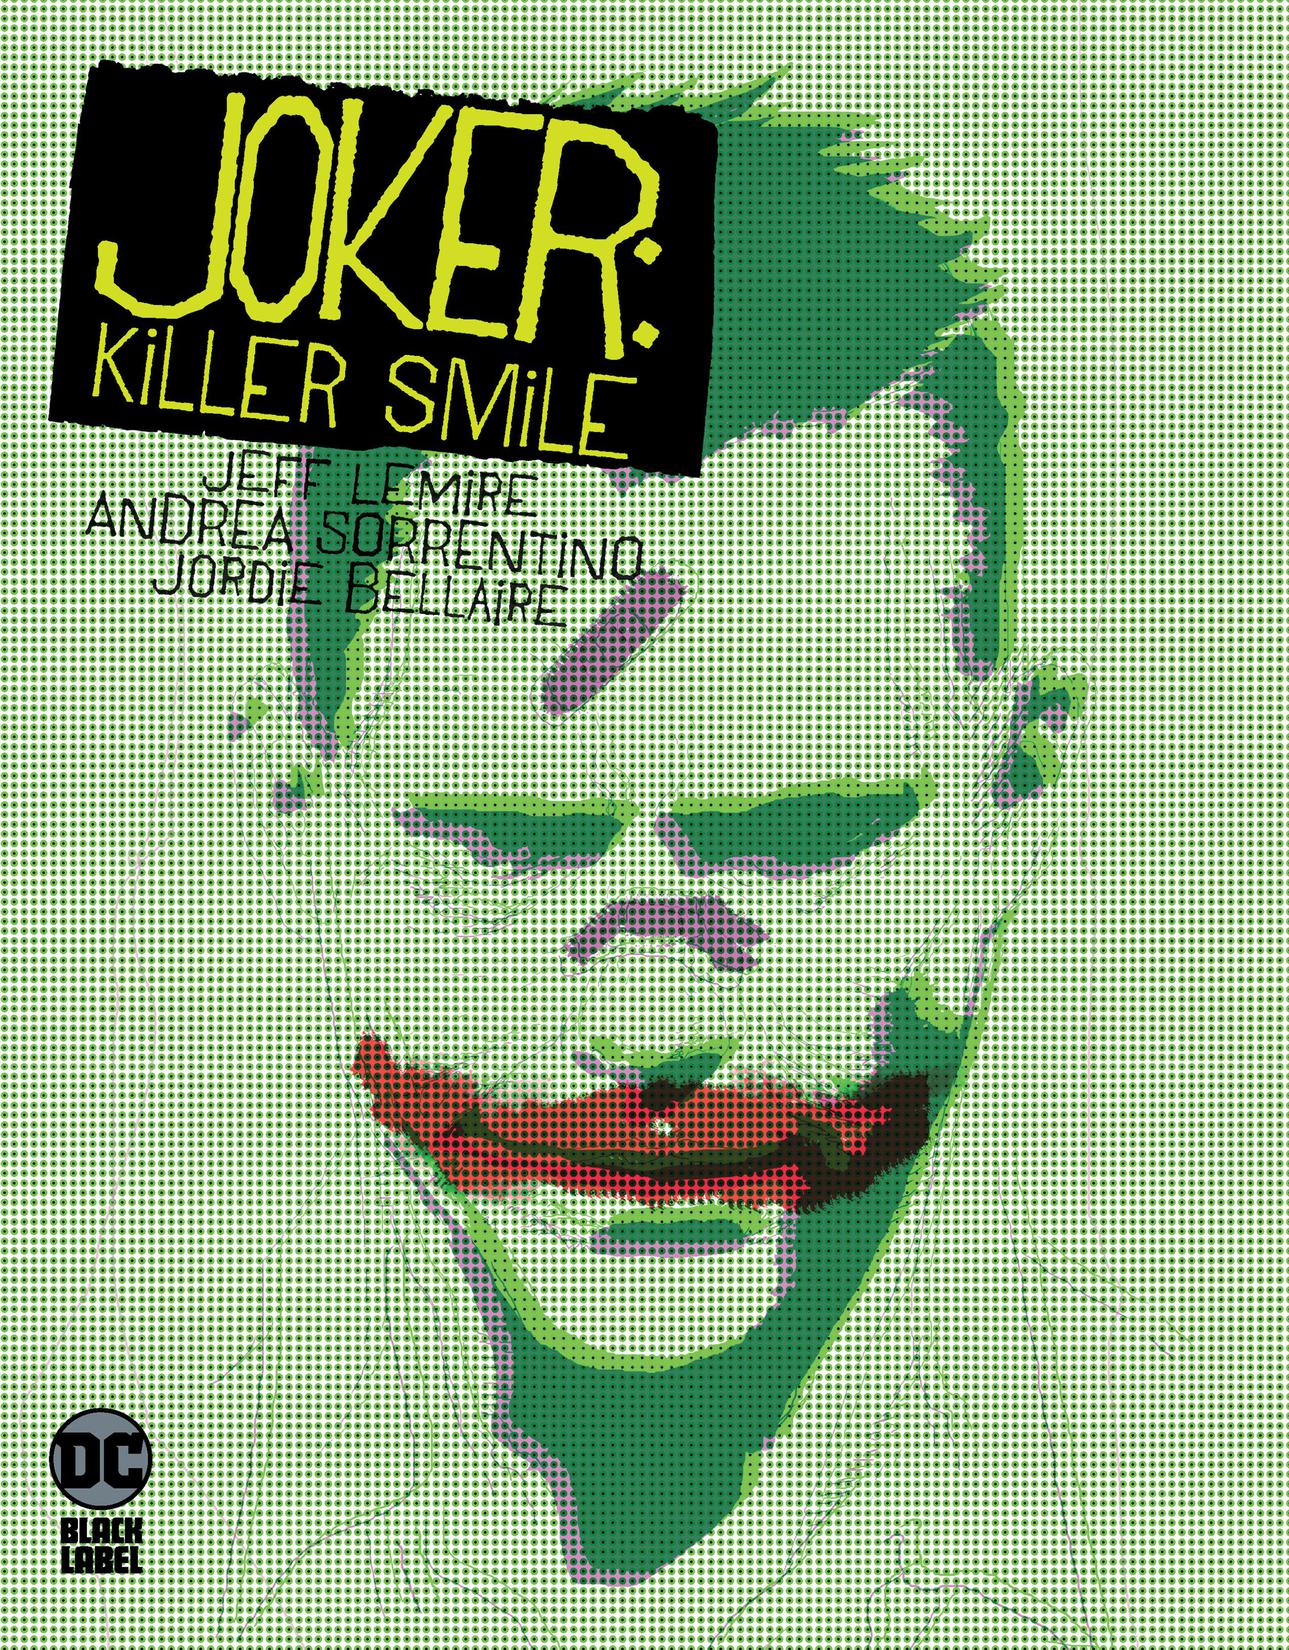 Joker: Killer Smile preview images